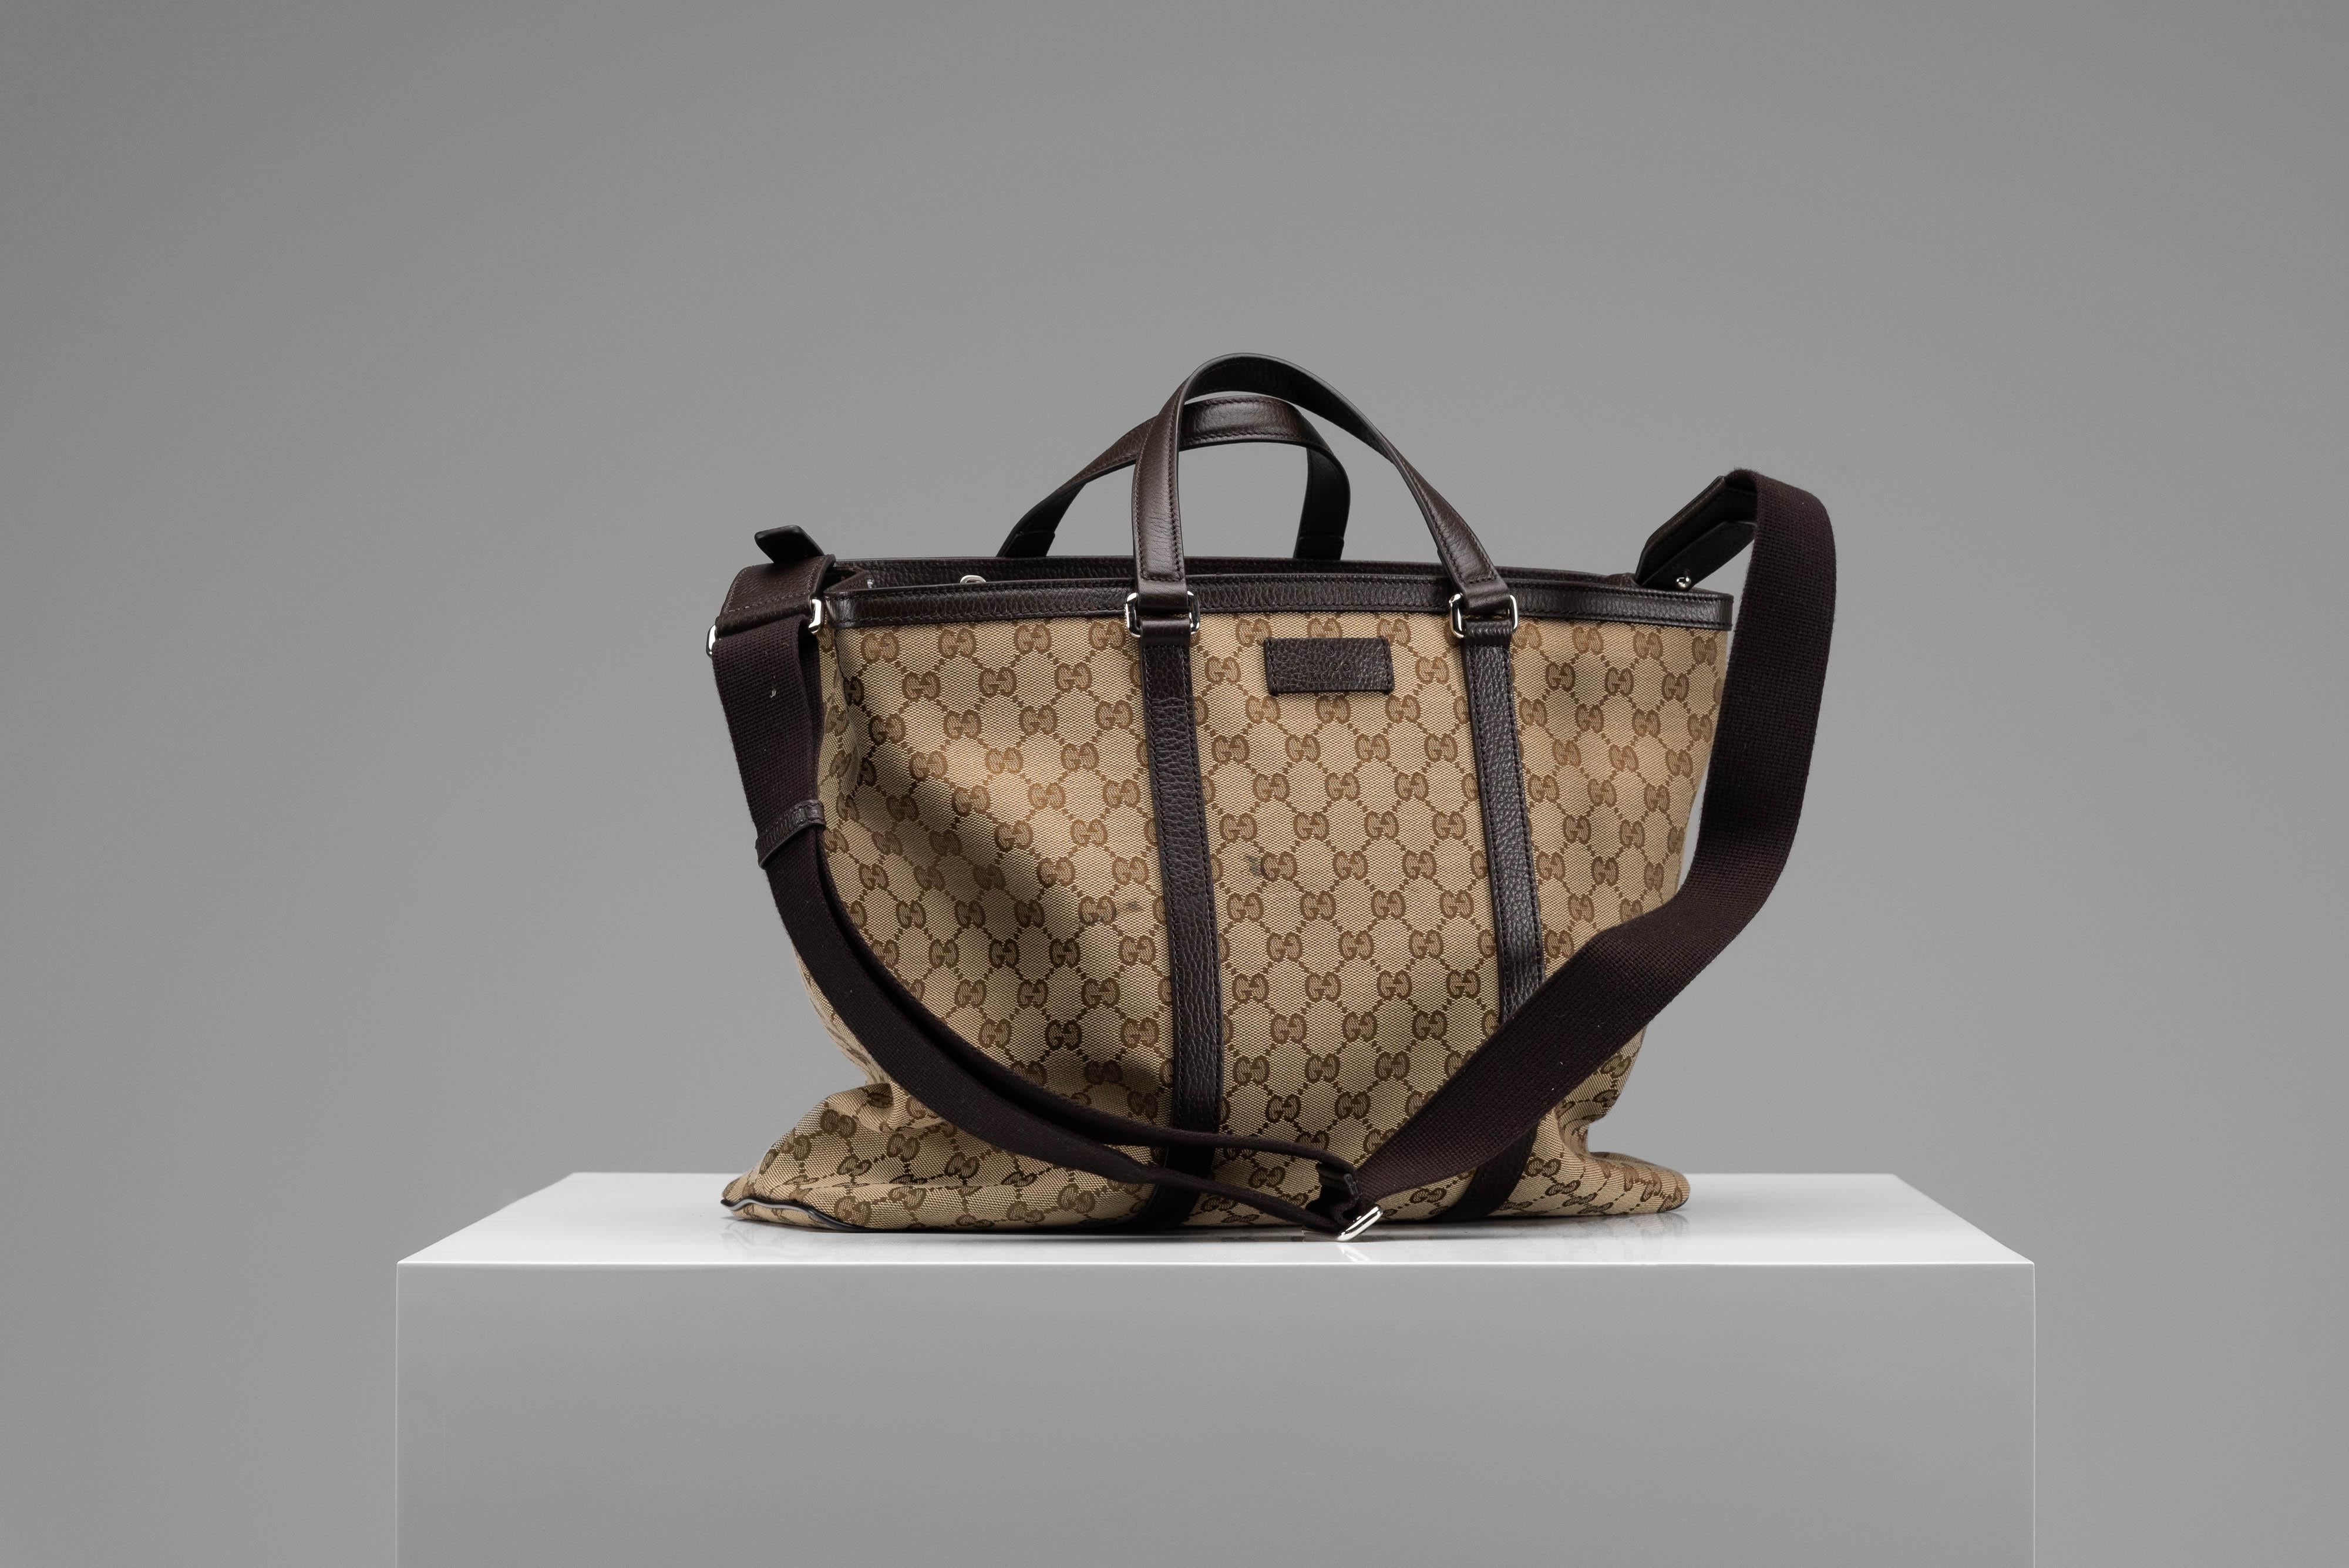 Aus der Kollektion von SAVINETI bieten wir diese Gucci Tote Bag an:

- Marke: Gucci
- Modell: Joy Guccissima Tragetasche
- Zustand: Ausgezeichnet 
- Extras: Staubbeutel

Authentizität ist unser zentraler Wert bei SAVINETI und dieser Prozess